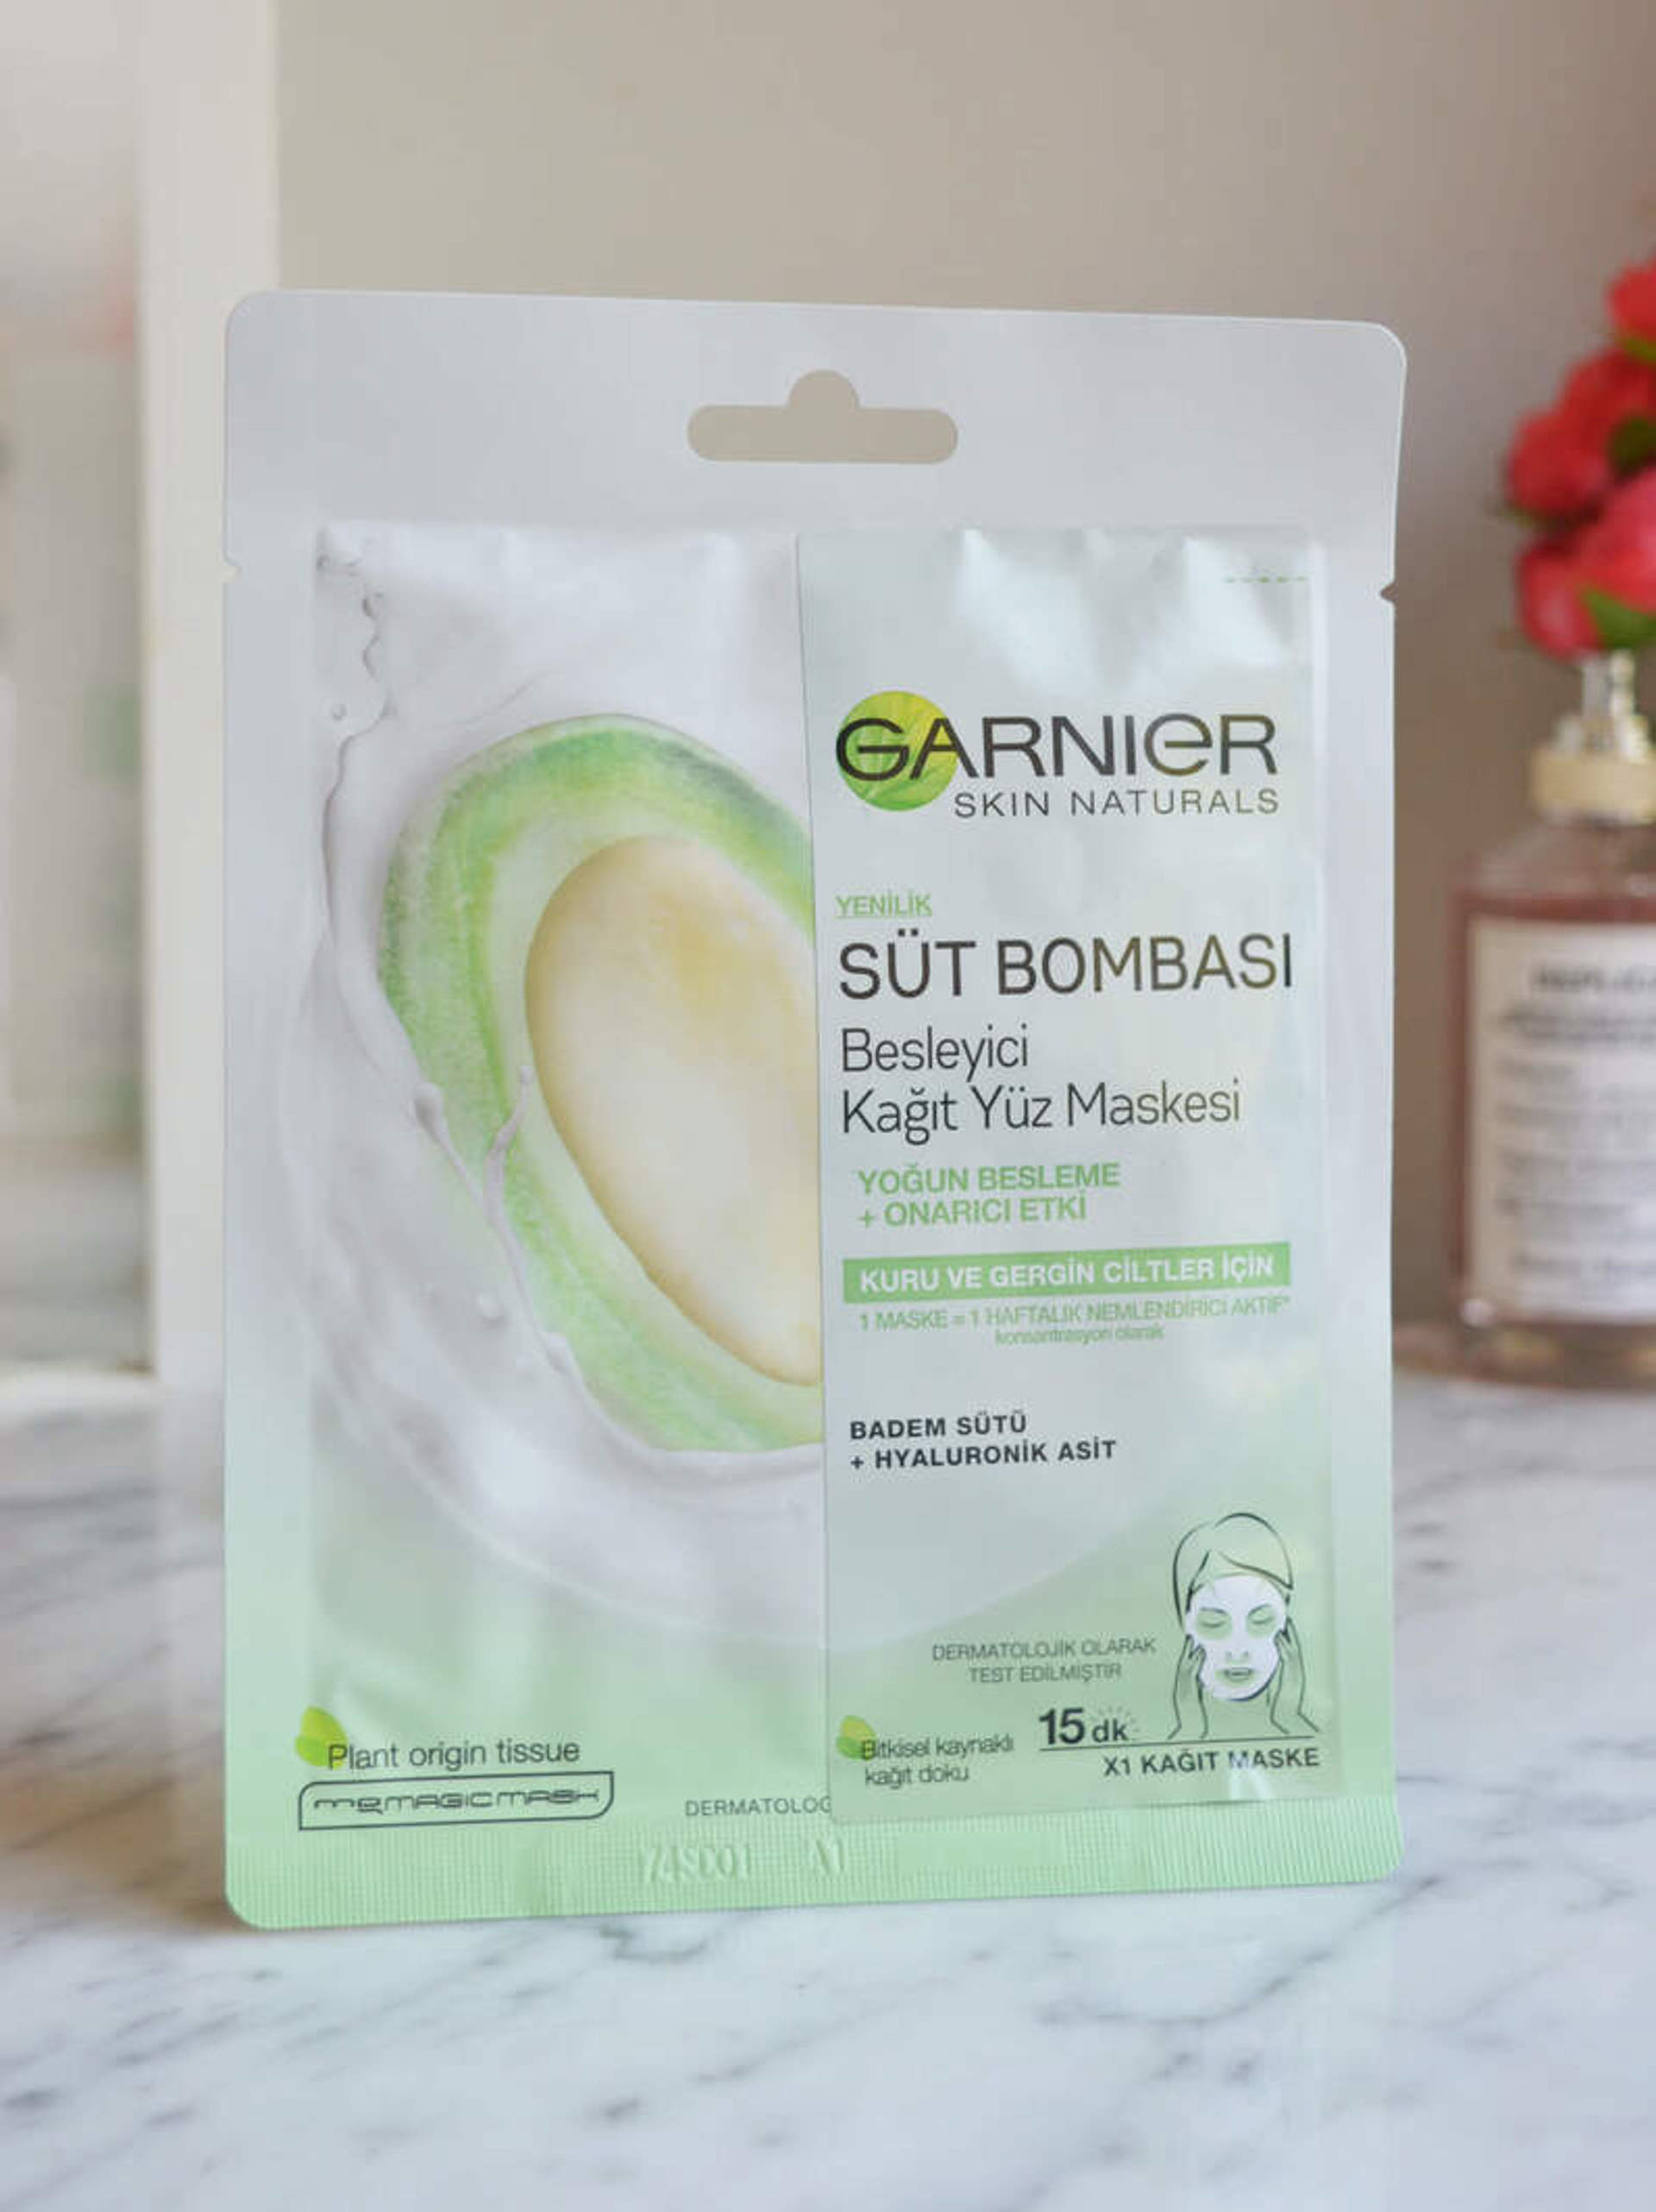 Garnier Süt Bombası Besleyici Kağıt Yüz Maskesi Badem Sütü